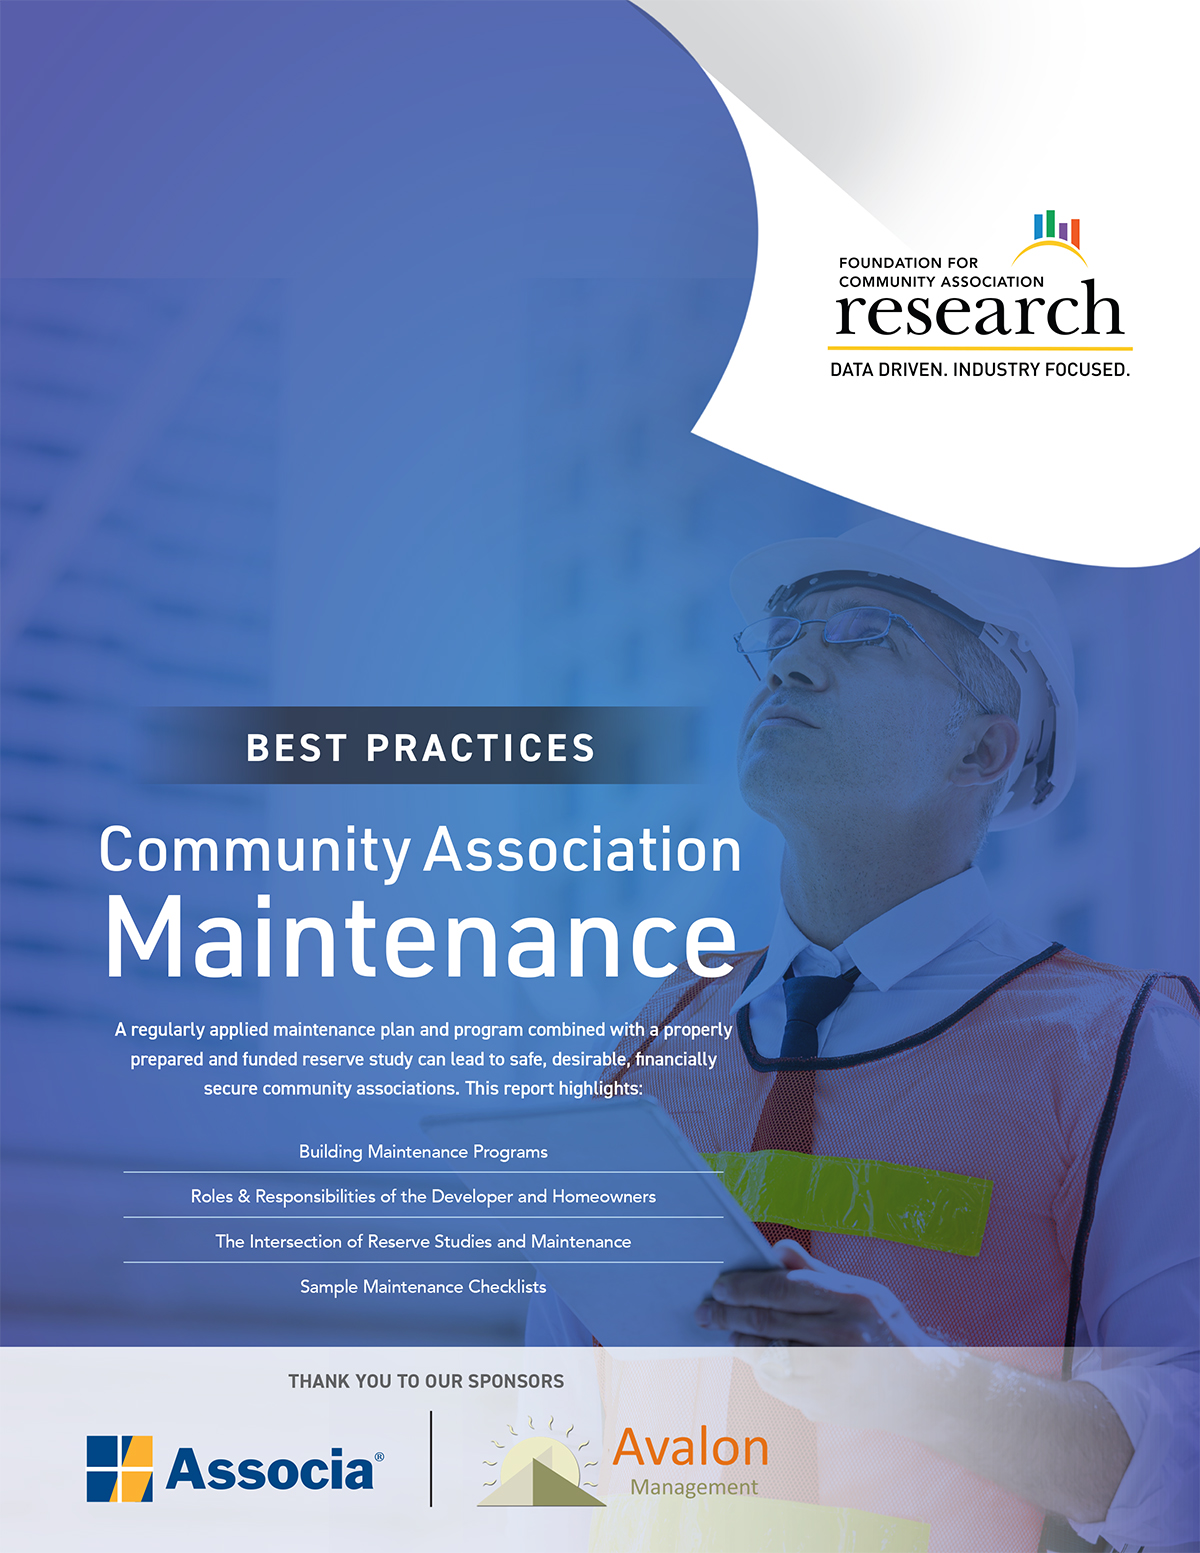 Best Practices: Community Association Maintenance